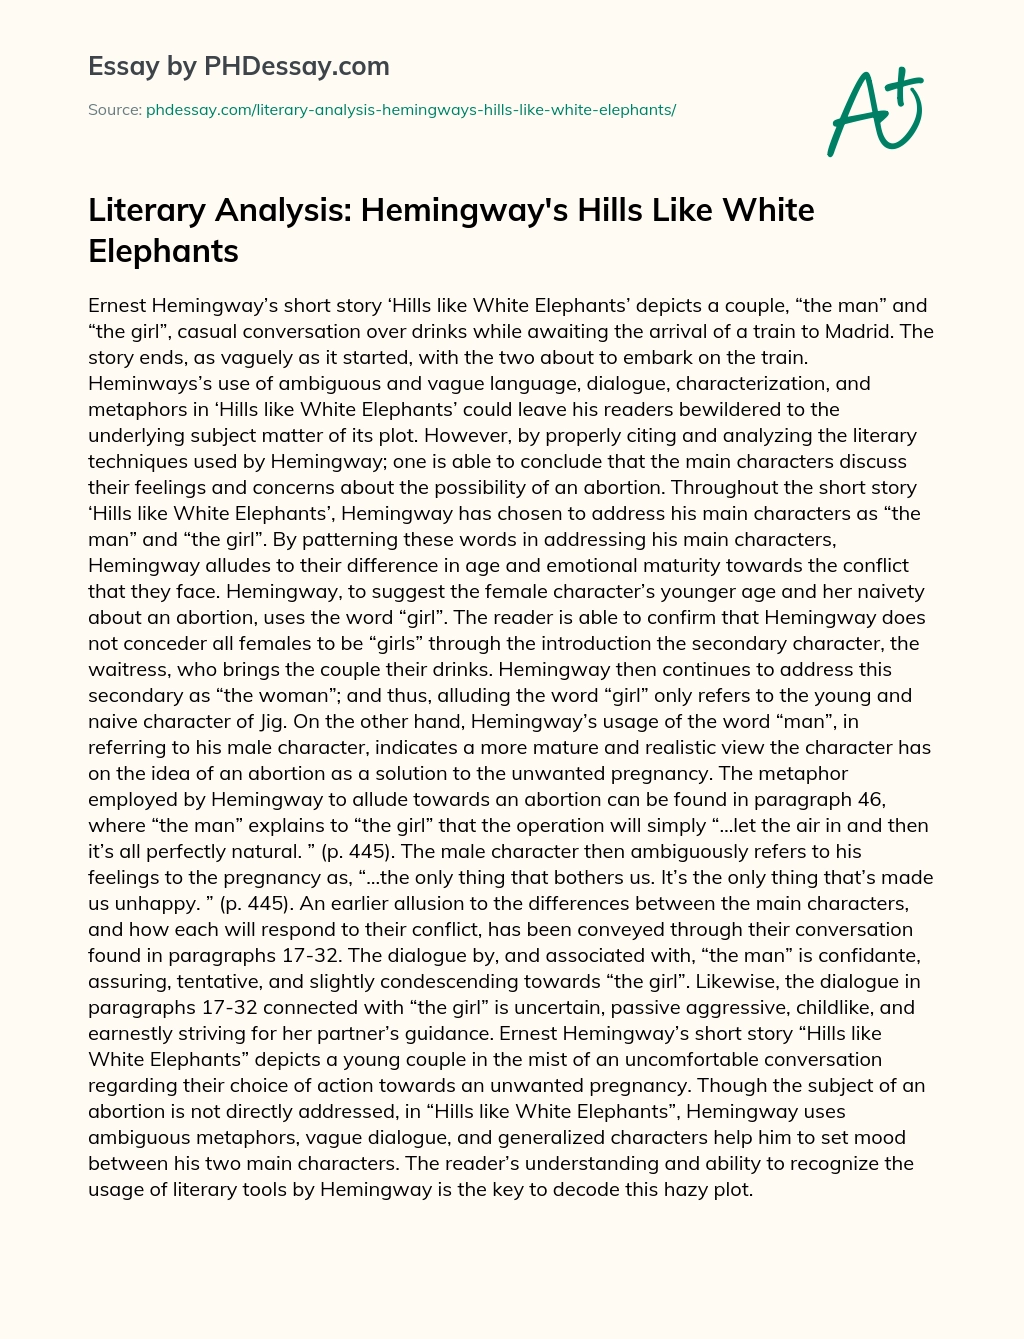 Literary Analysis: Hemingway’s Hills Like White Elephants